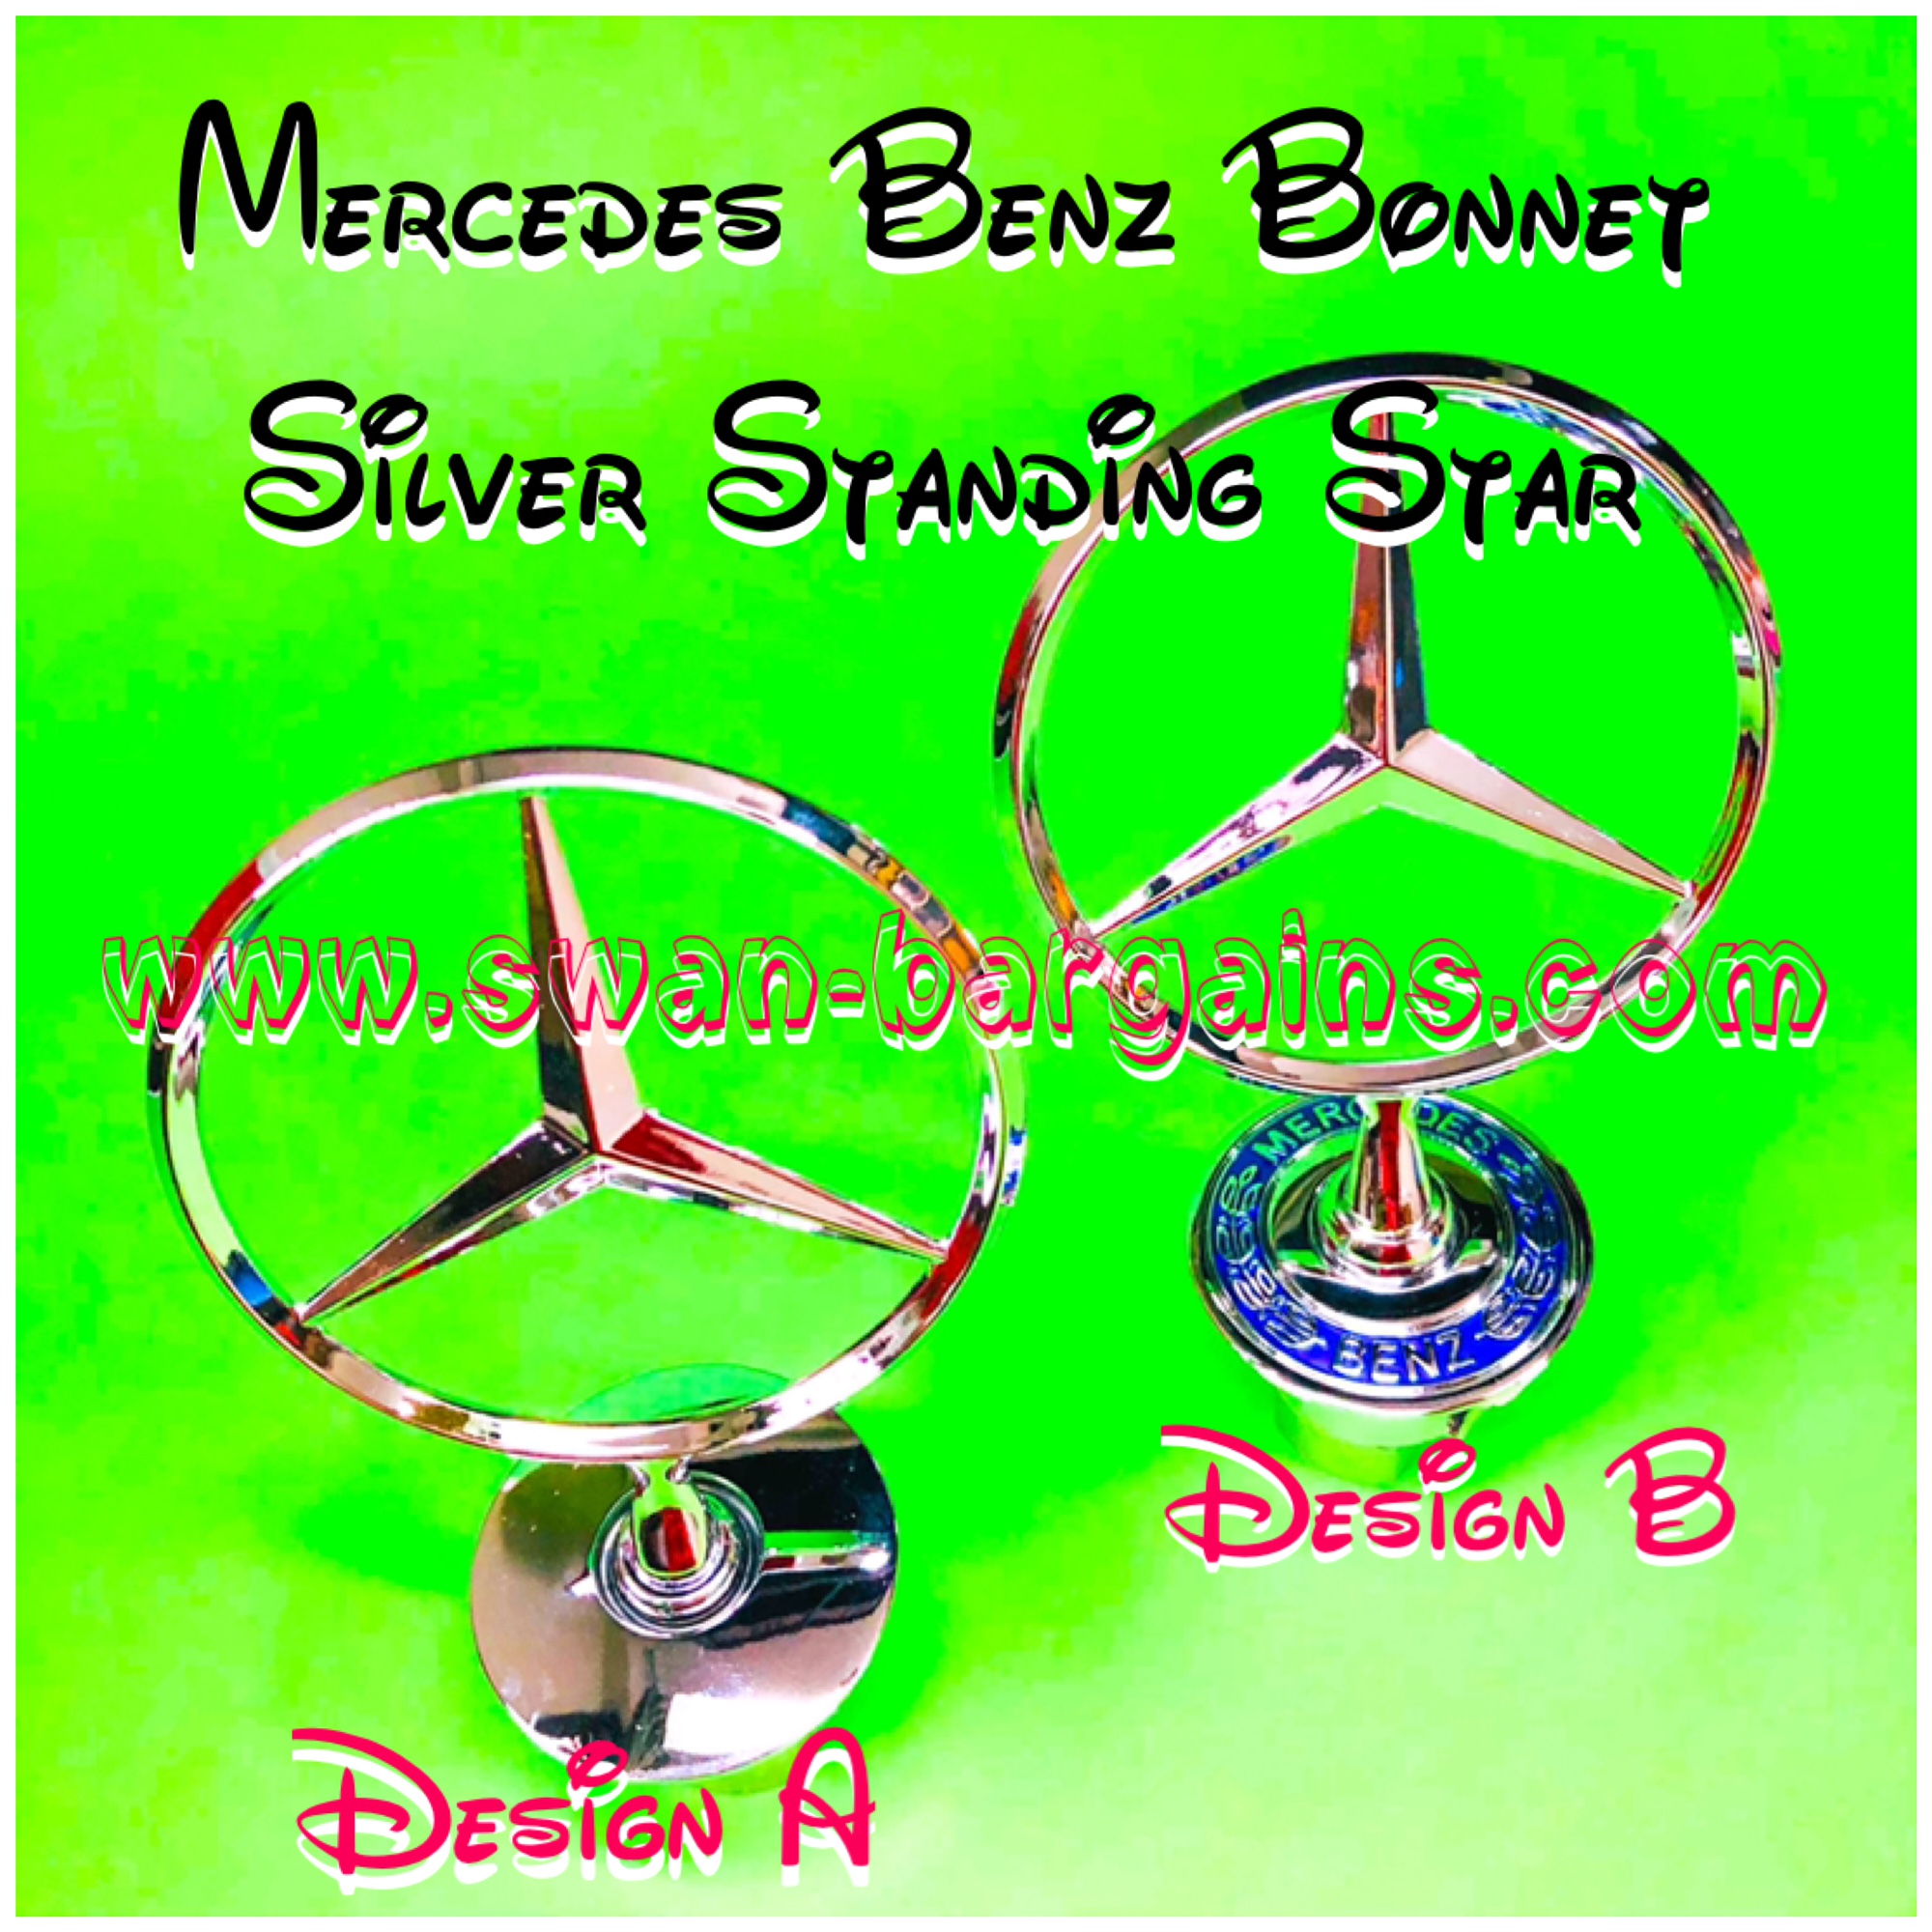 Mercedes-Benz Bonnet Standing Star Logo Singapore - Silver